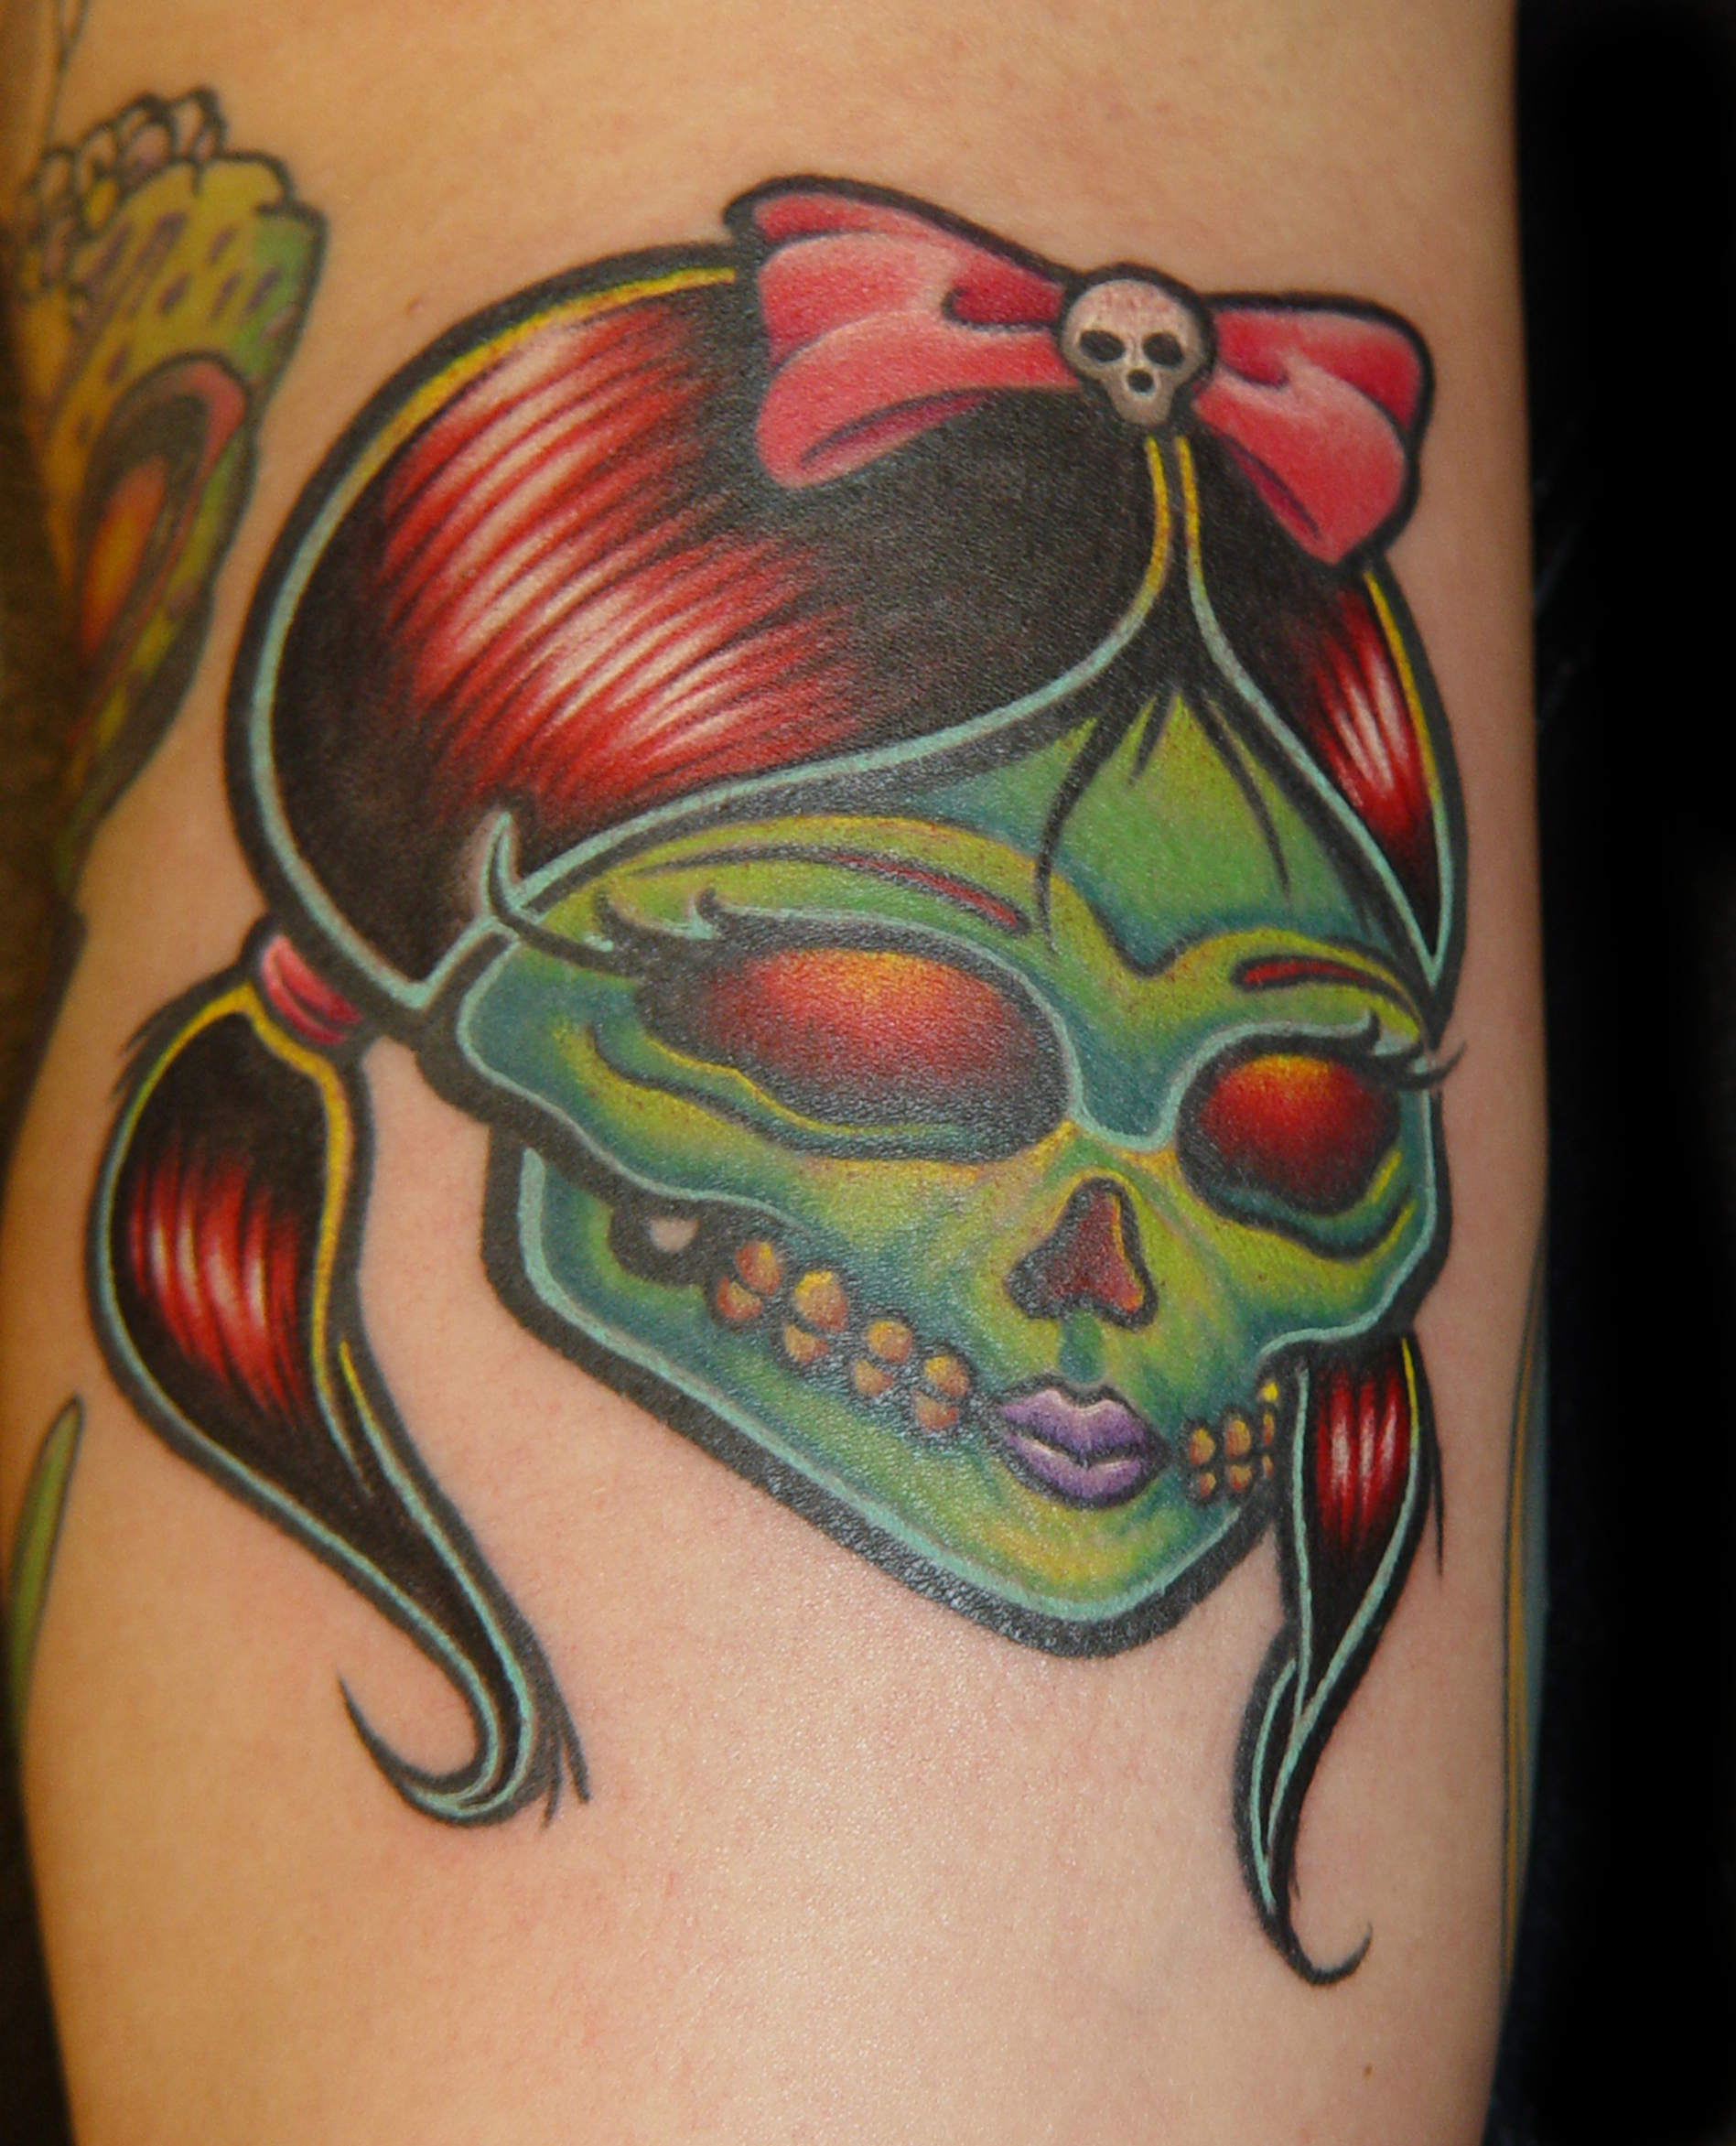 http://fc05.deviantart.net/fs70/f/2010/022/a/4/Girly_Skull_Tattoo_by_slipslopslap.jpg